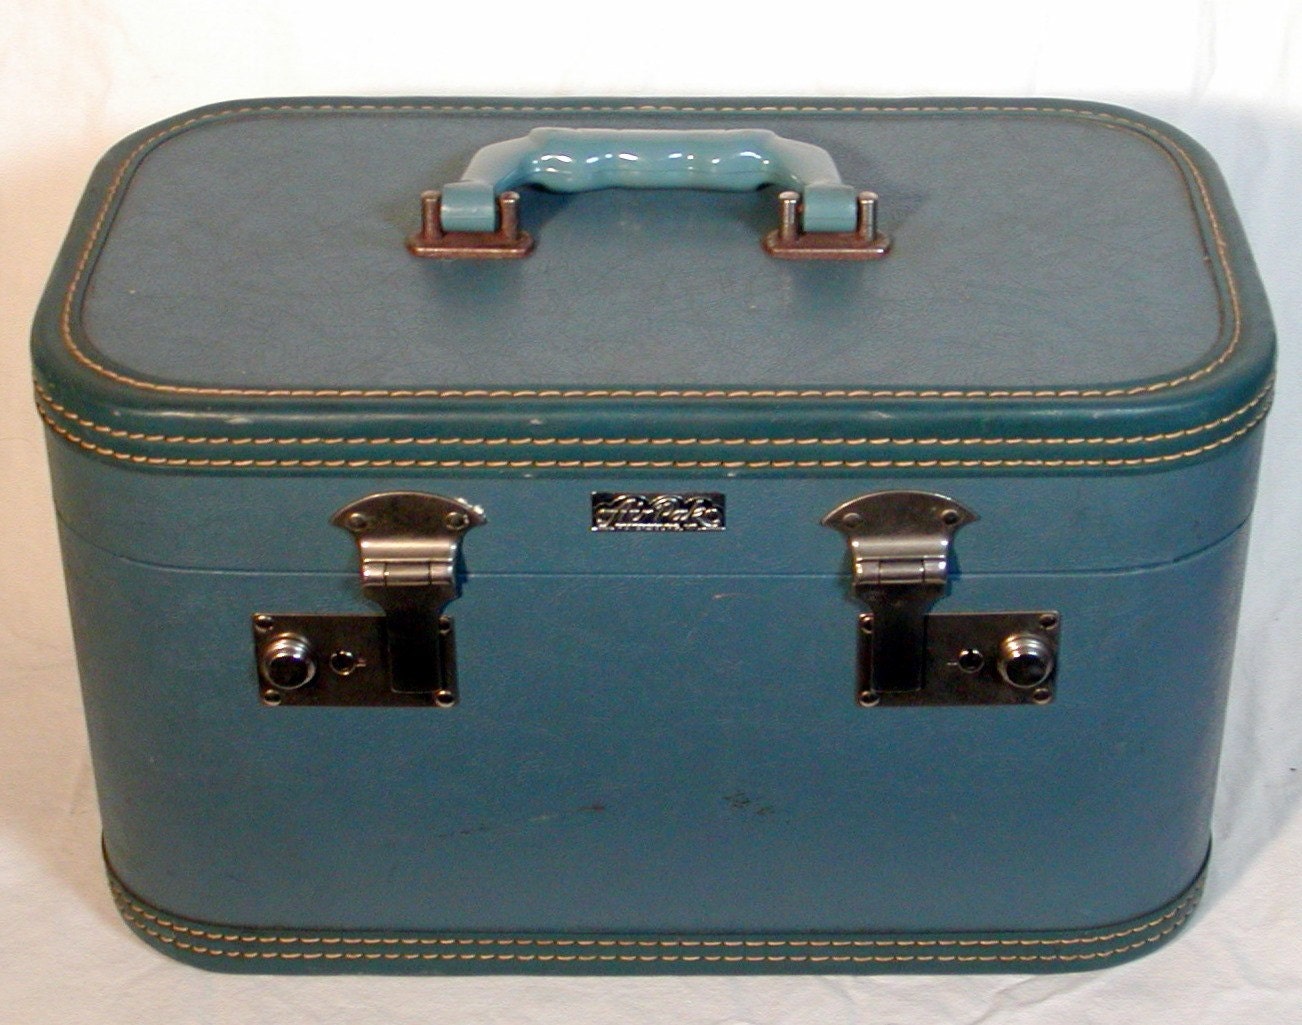 vintage travel makeup case